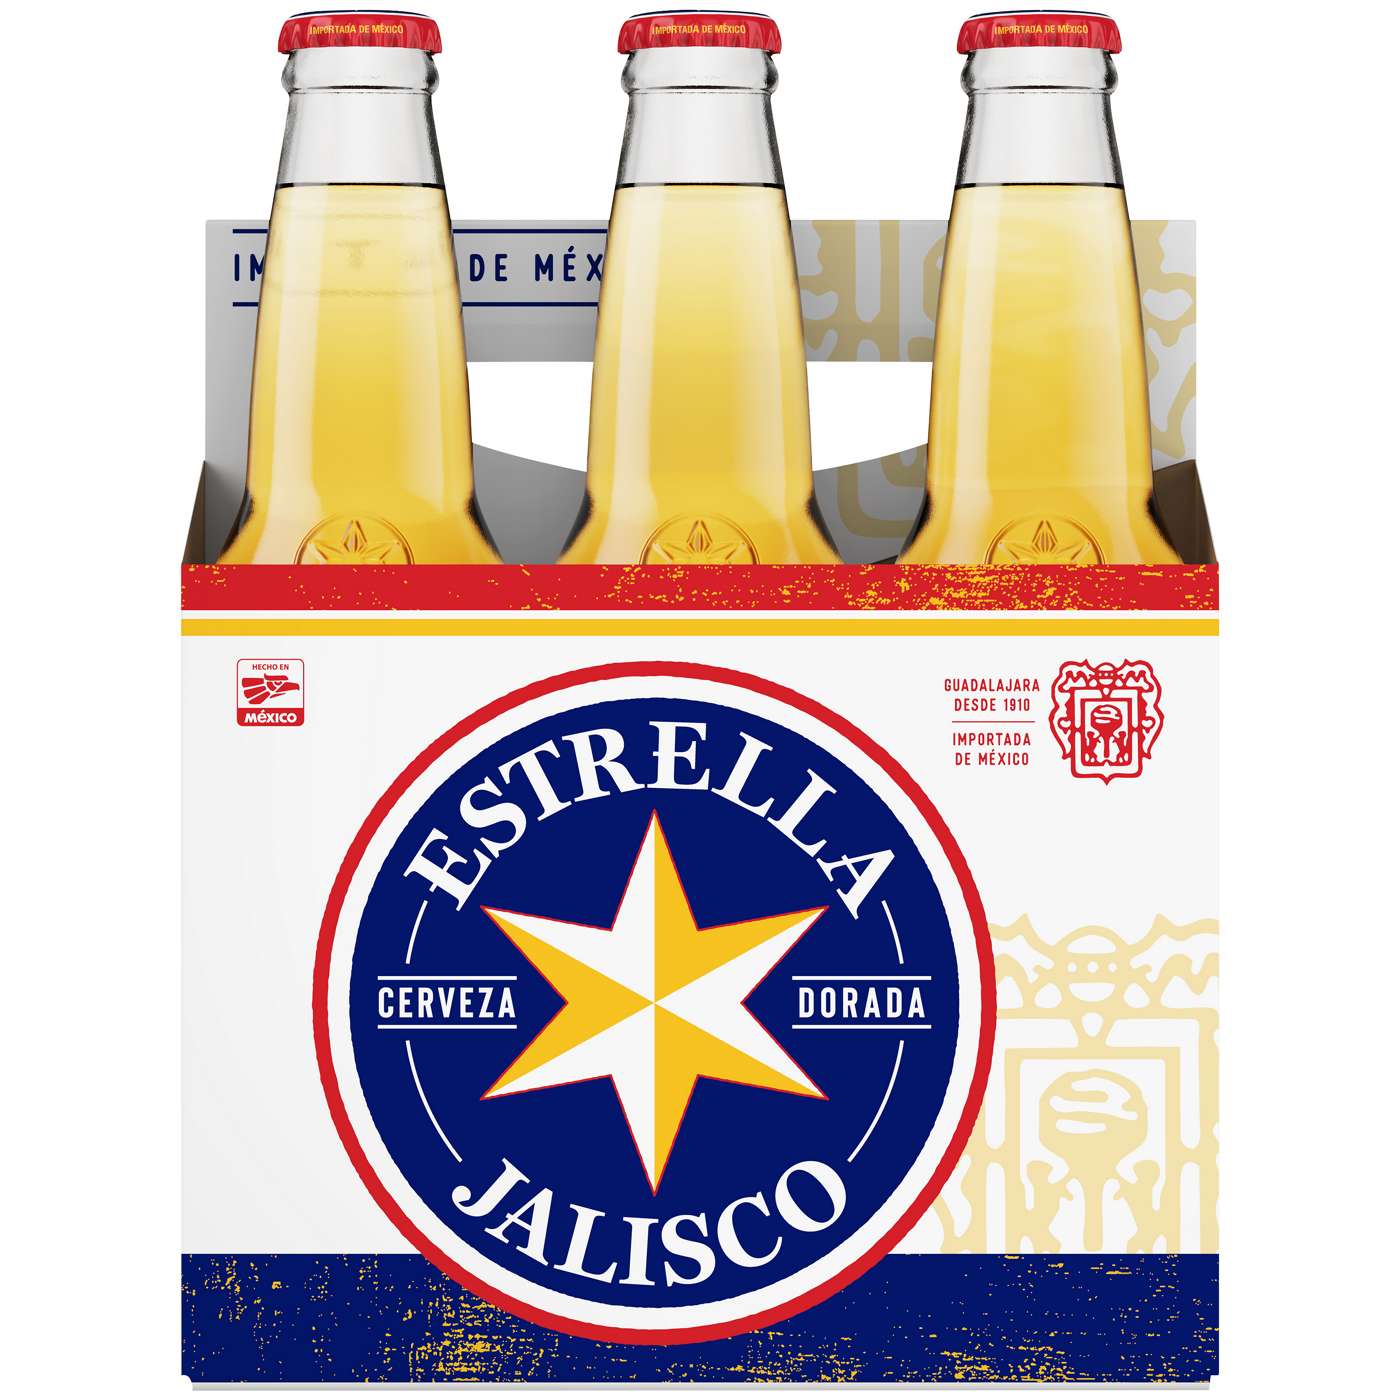 Estrella Jalisco Pilsner Beer 12 oz Bottles; image 2 of 2